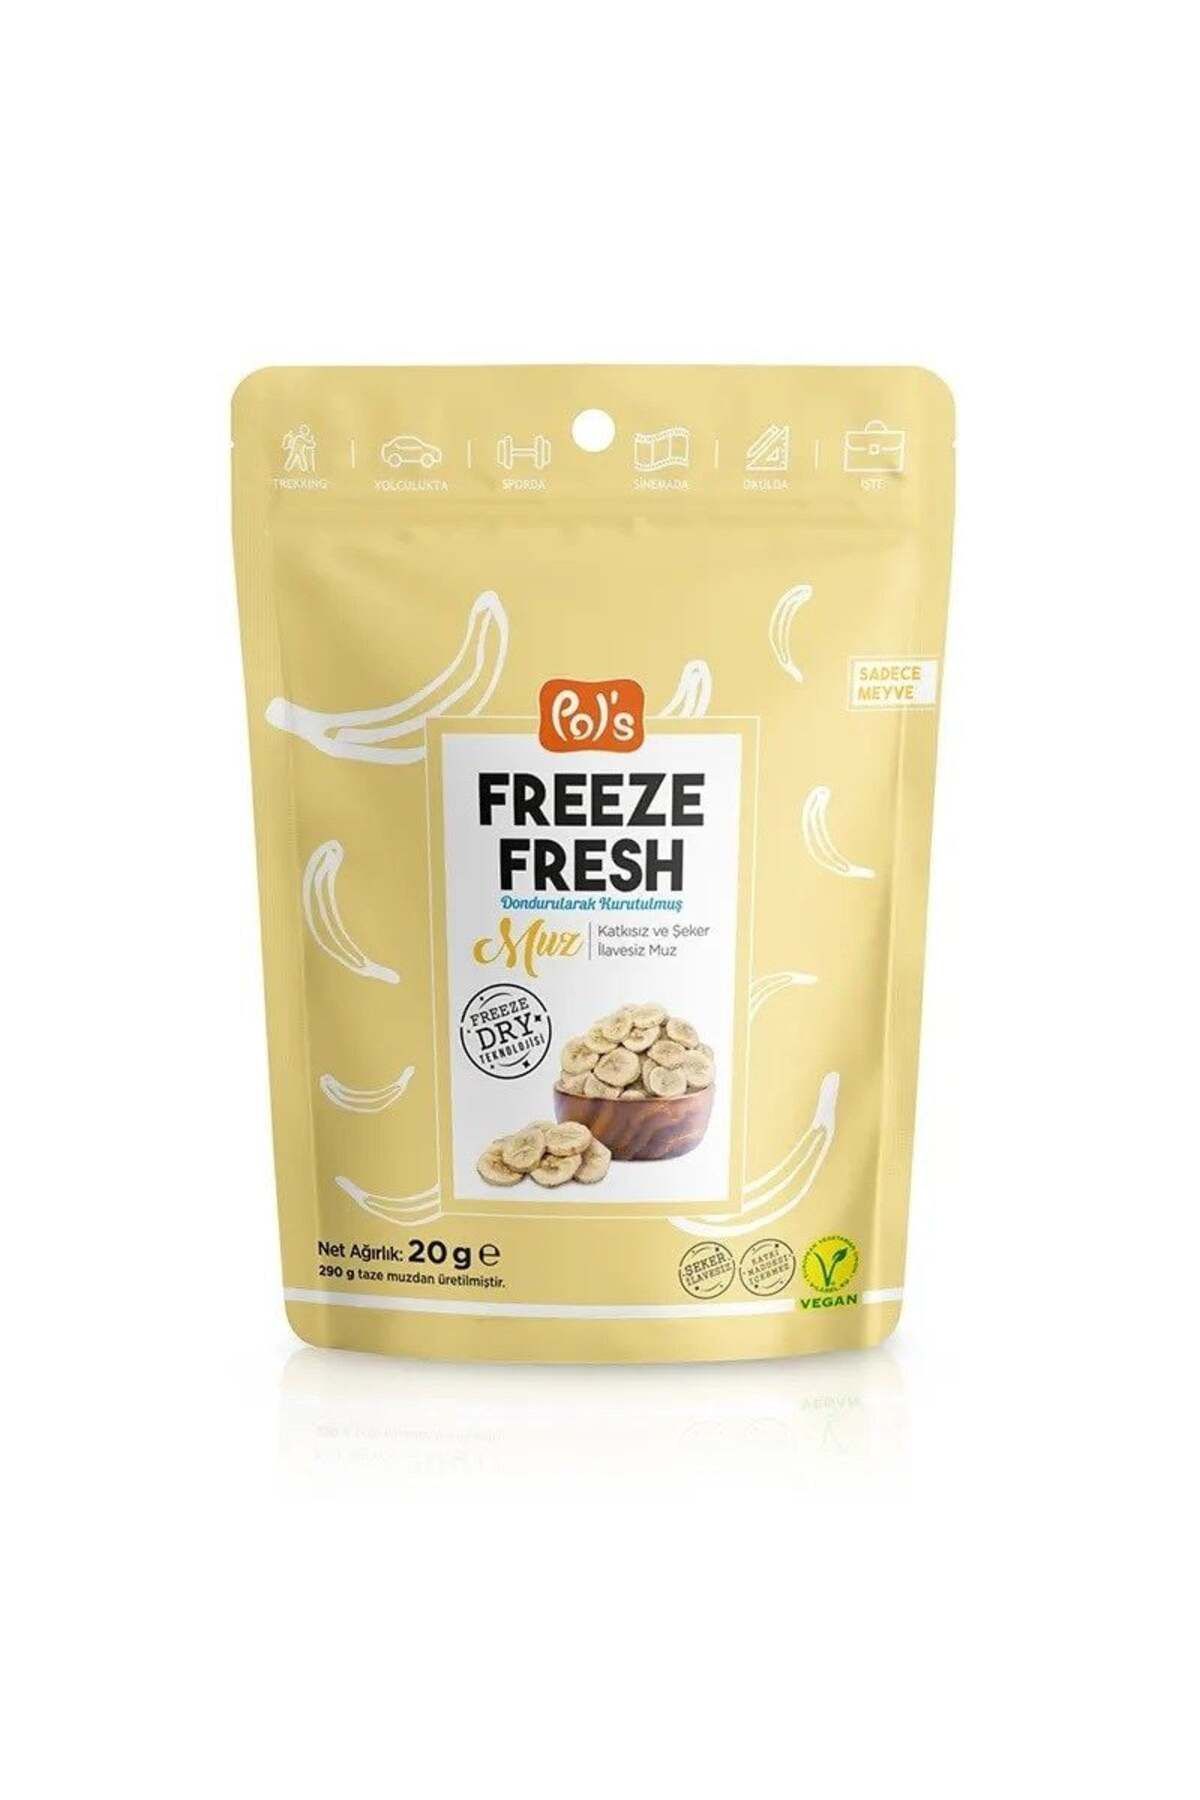 Genel Markalar Pol's Freeze Fresh Dried Muz